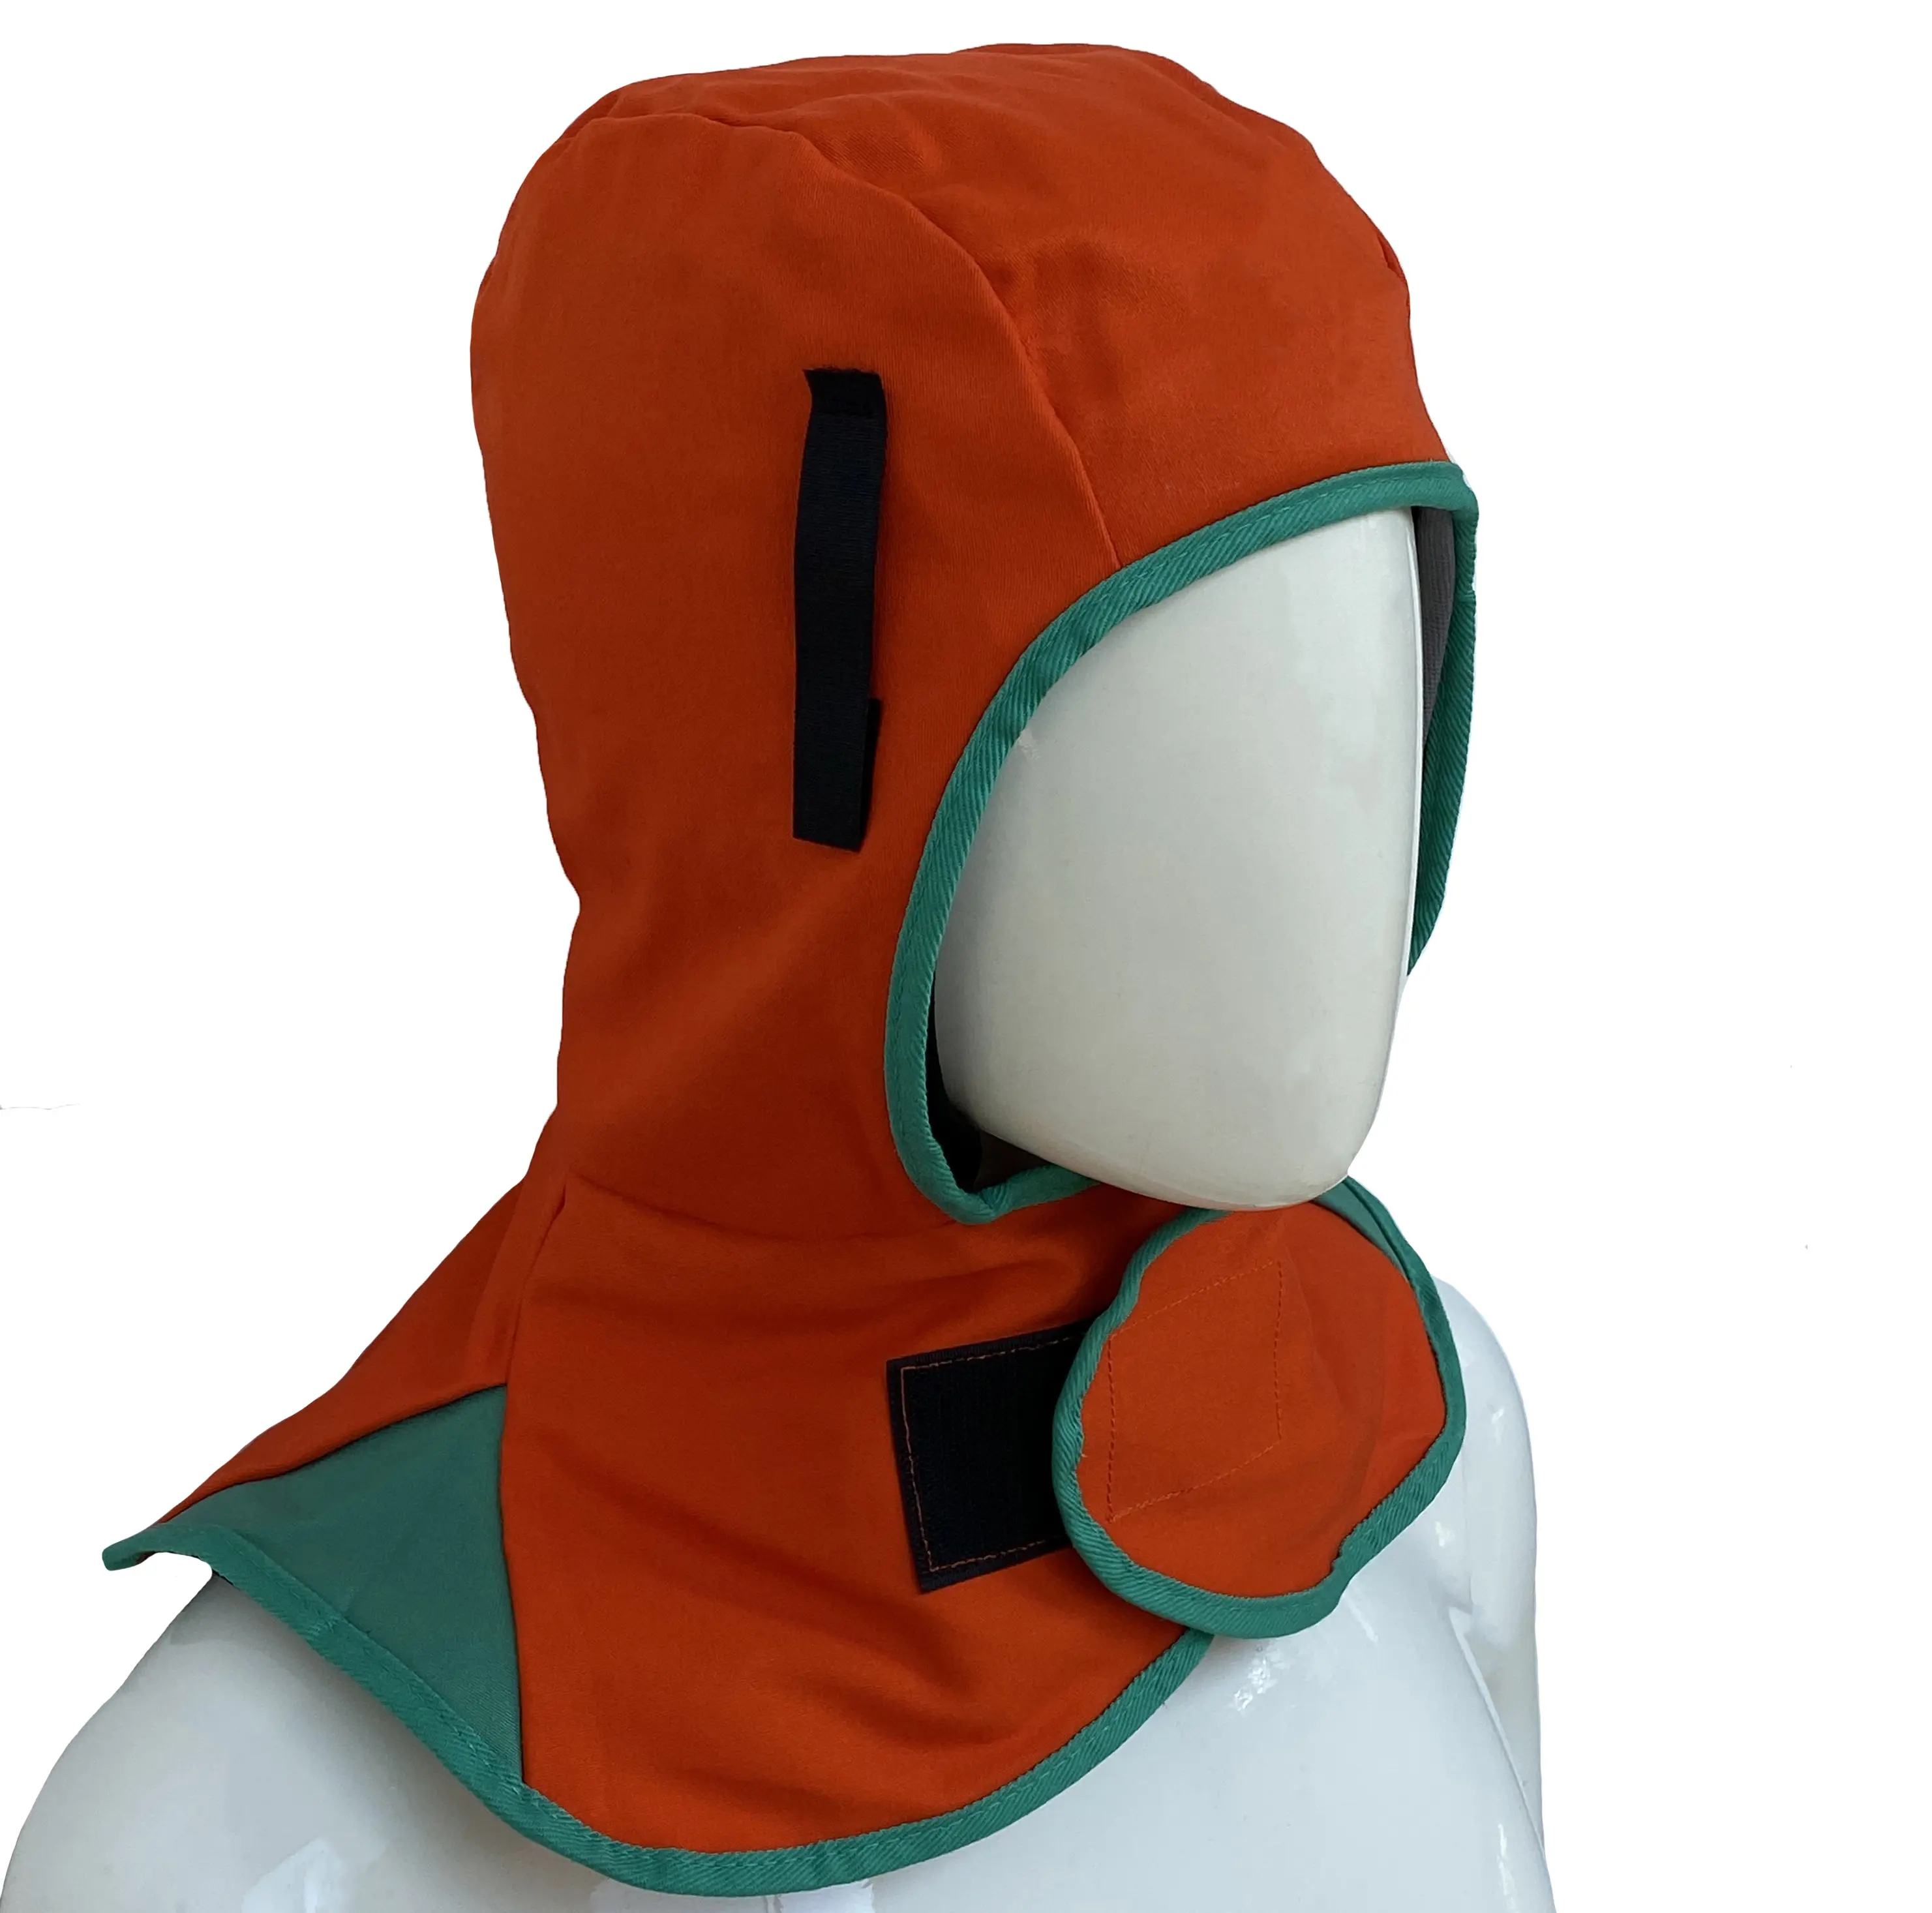 FR Schweiß hut Orange Farbe Flamm hemmendes Schweißen Fackel haube Hals Schutzhelm Kopf Sicherheits kappe